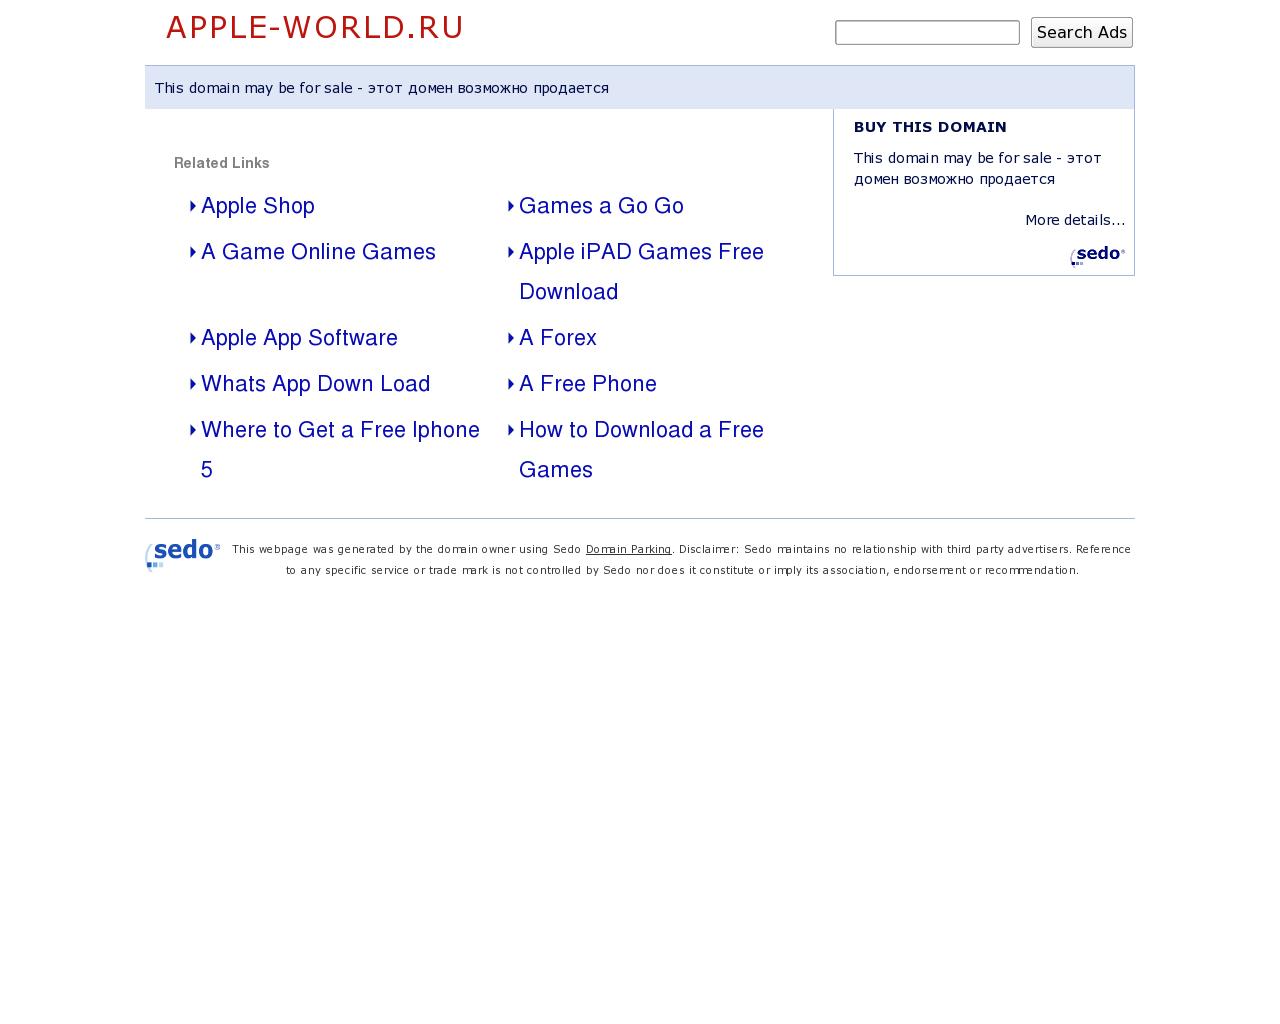 Изображение сайта apple-world.ru в разрешении 1280x1024